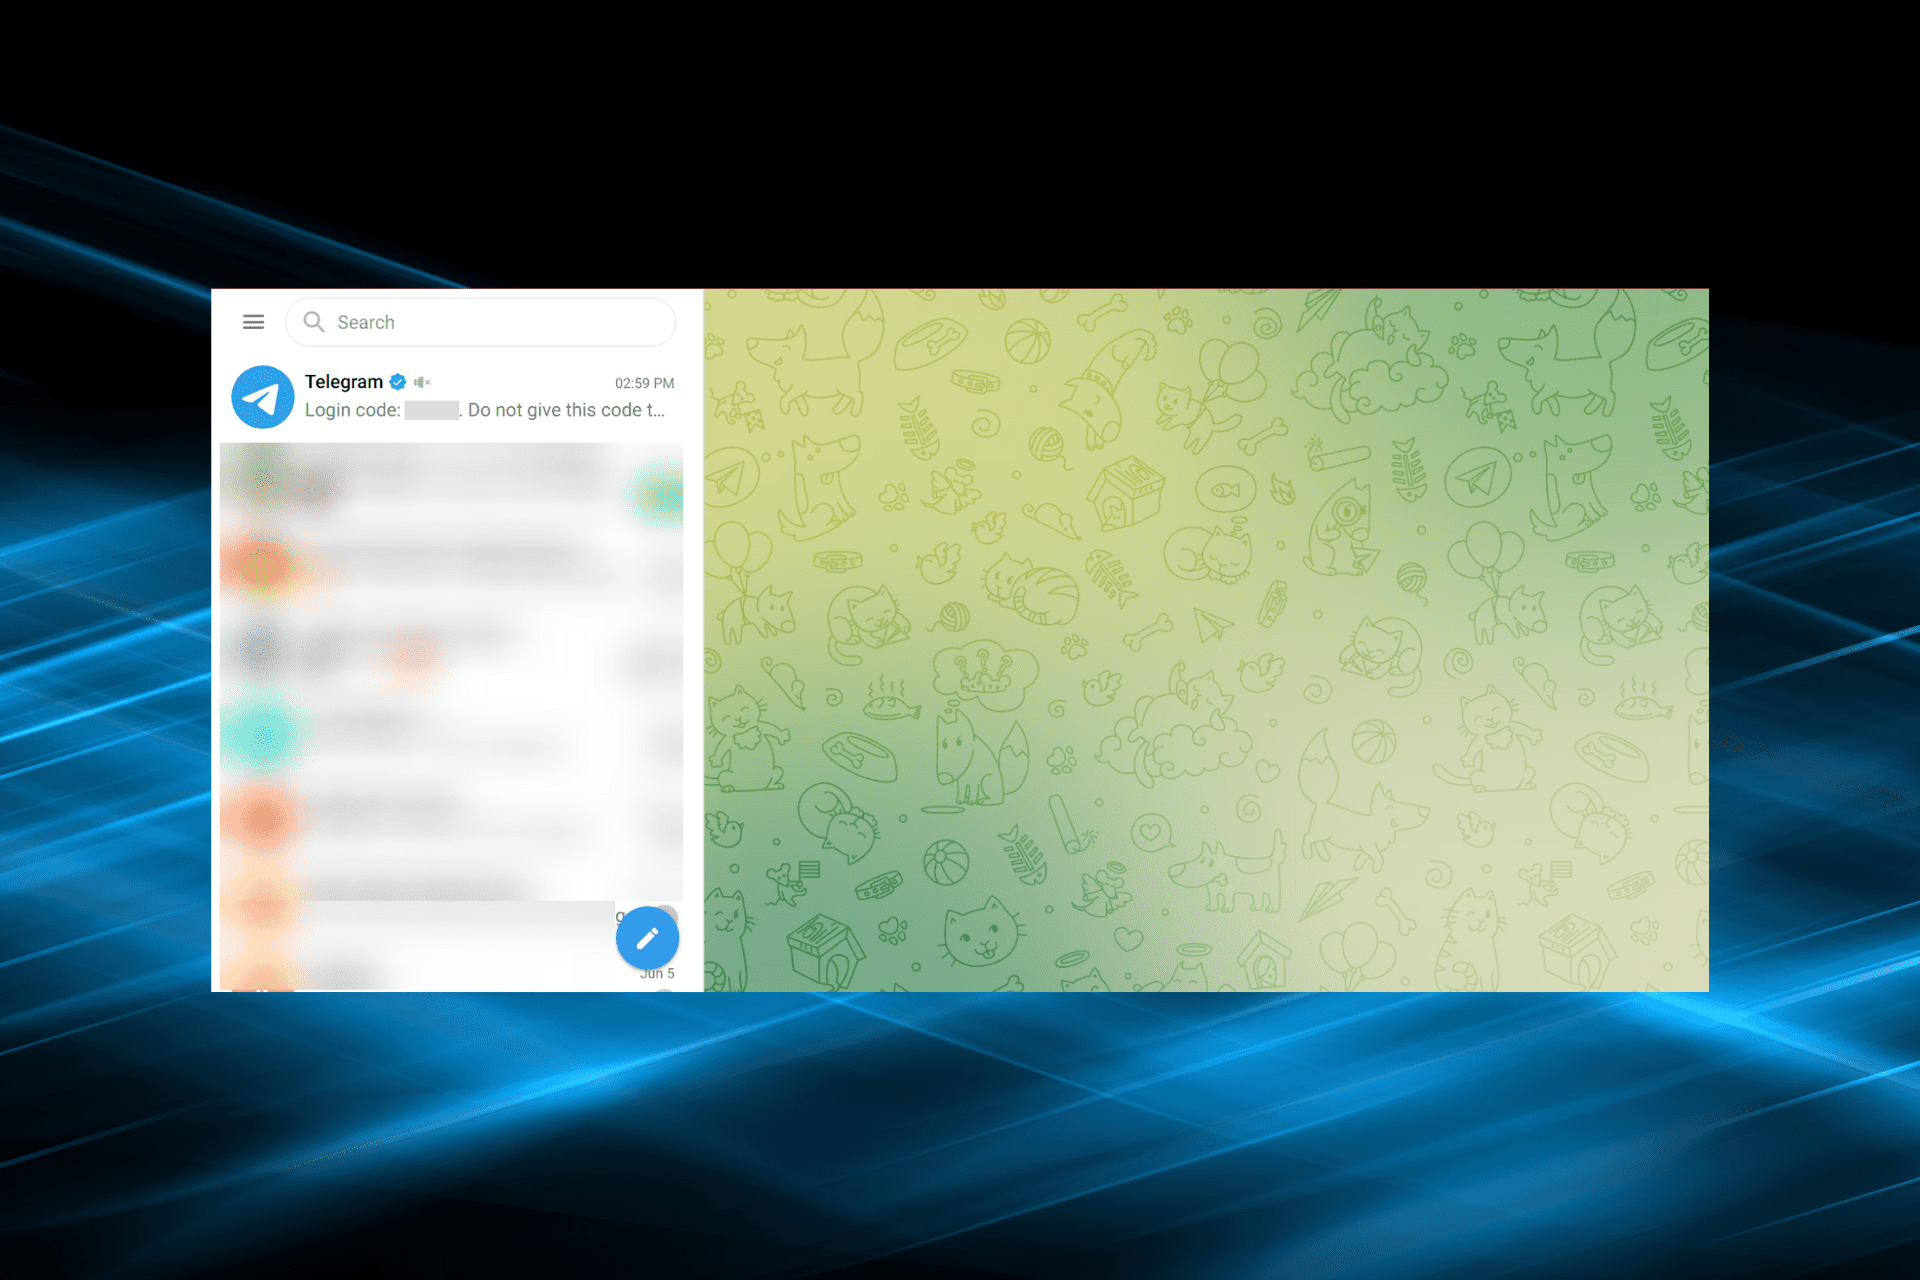 Open telegram in browser